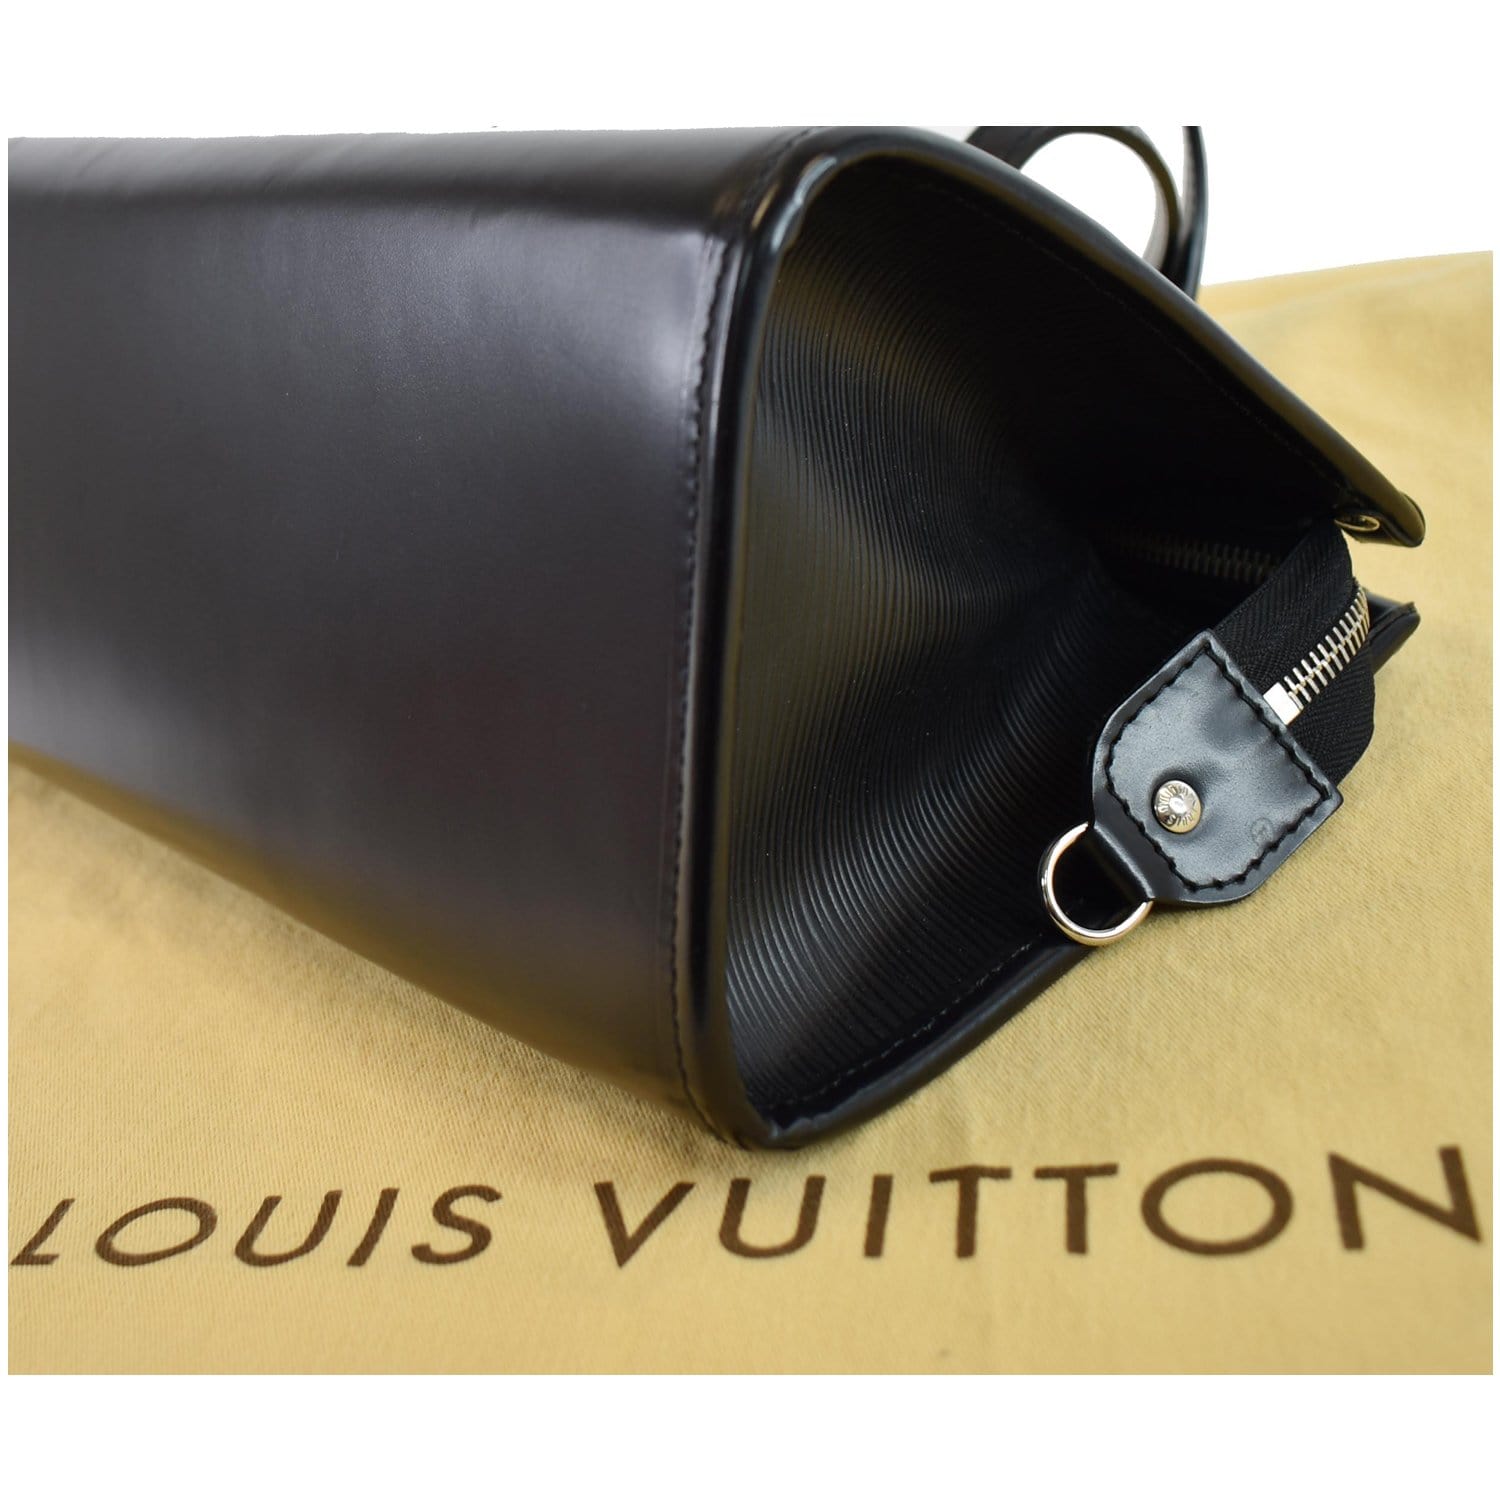 LOUIS VUITTON Madeleine PM Epi Leather Shoulder Bag Black